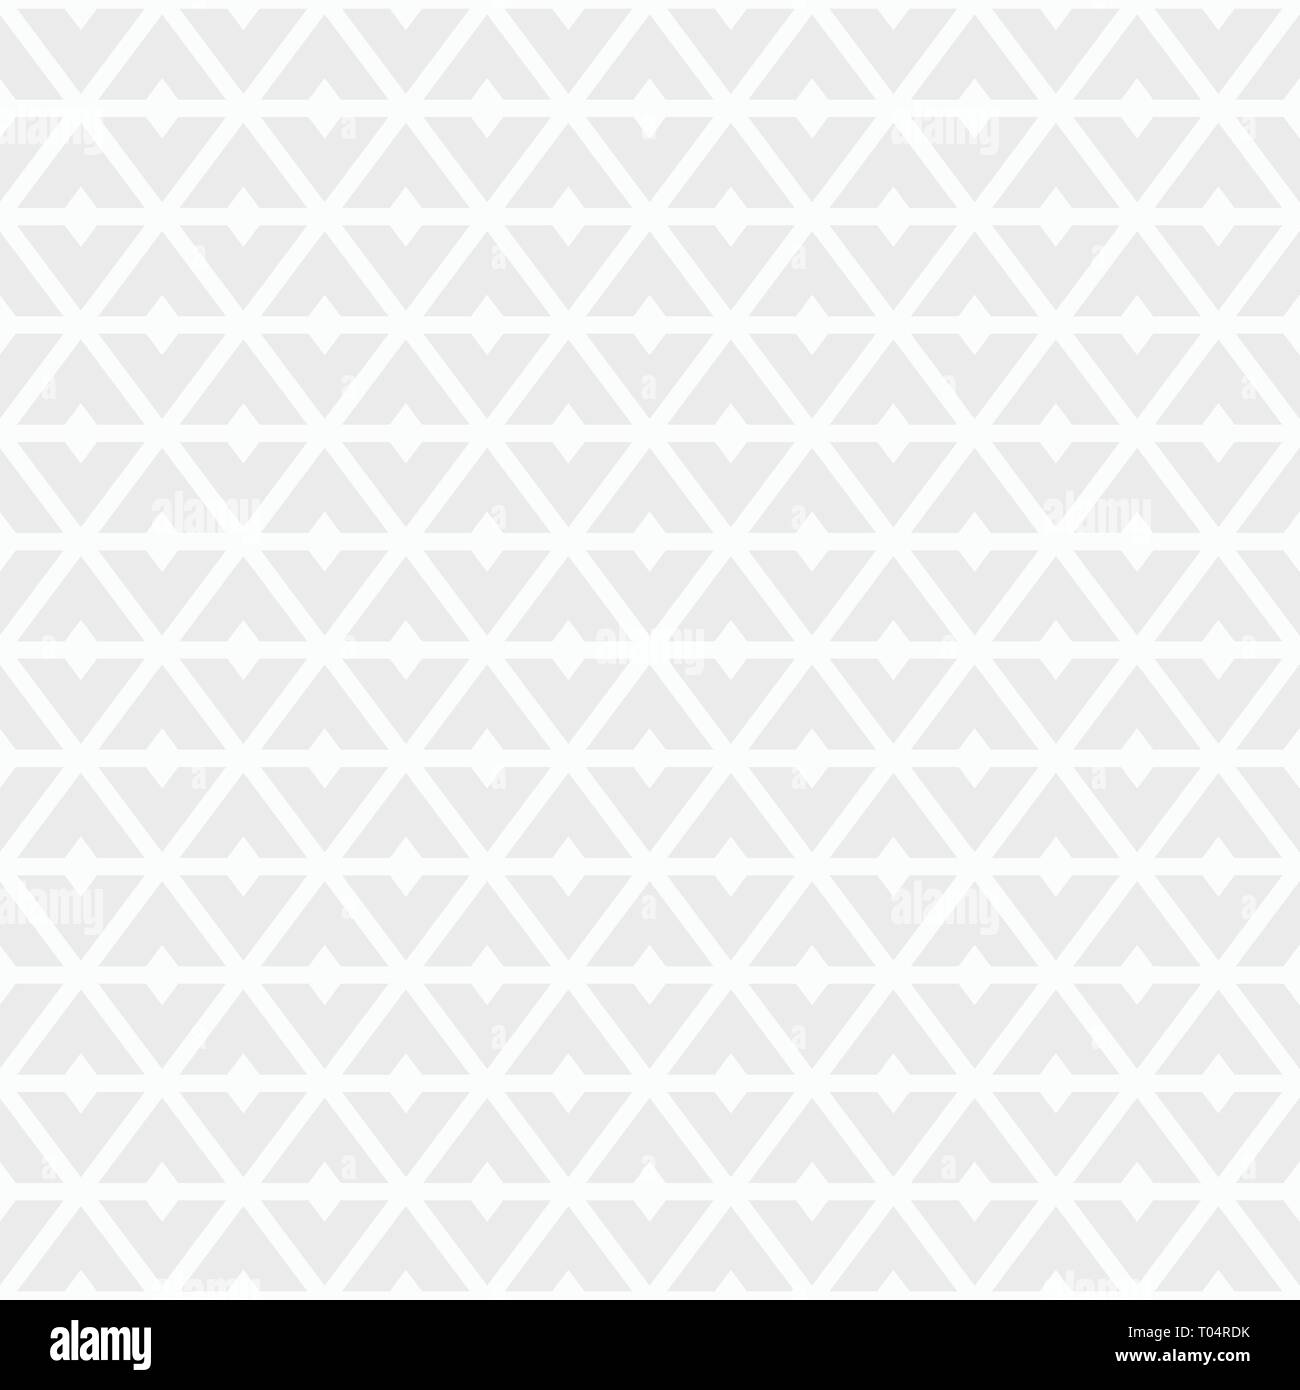 Résumé motif transparent géométrique de formes géométriques triangulaires. Blanc et gris, texture géométrique. La texture élégante moderne. Carreaux géométriques répétés Illustration de Vecteur